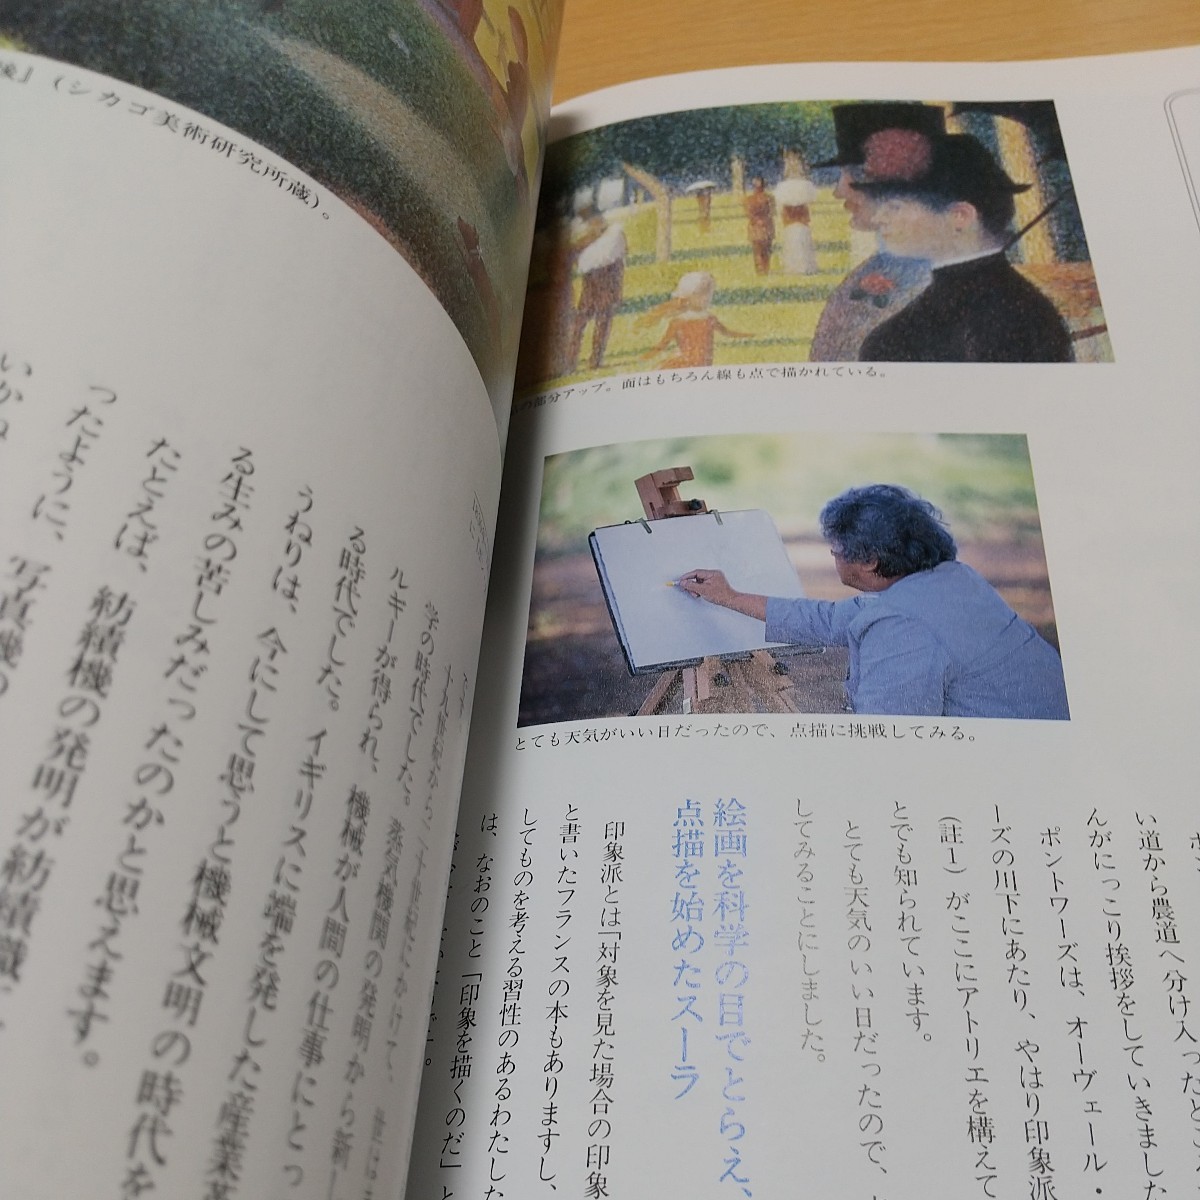 安野光雄 風景画を描く NHK趣味百科 テキスト 平成7年 中古 芸術 絵画 美術